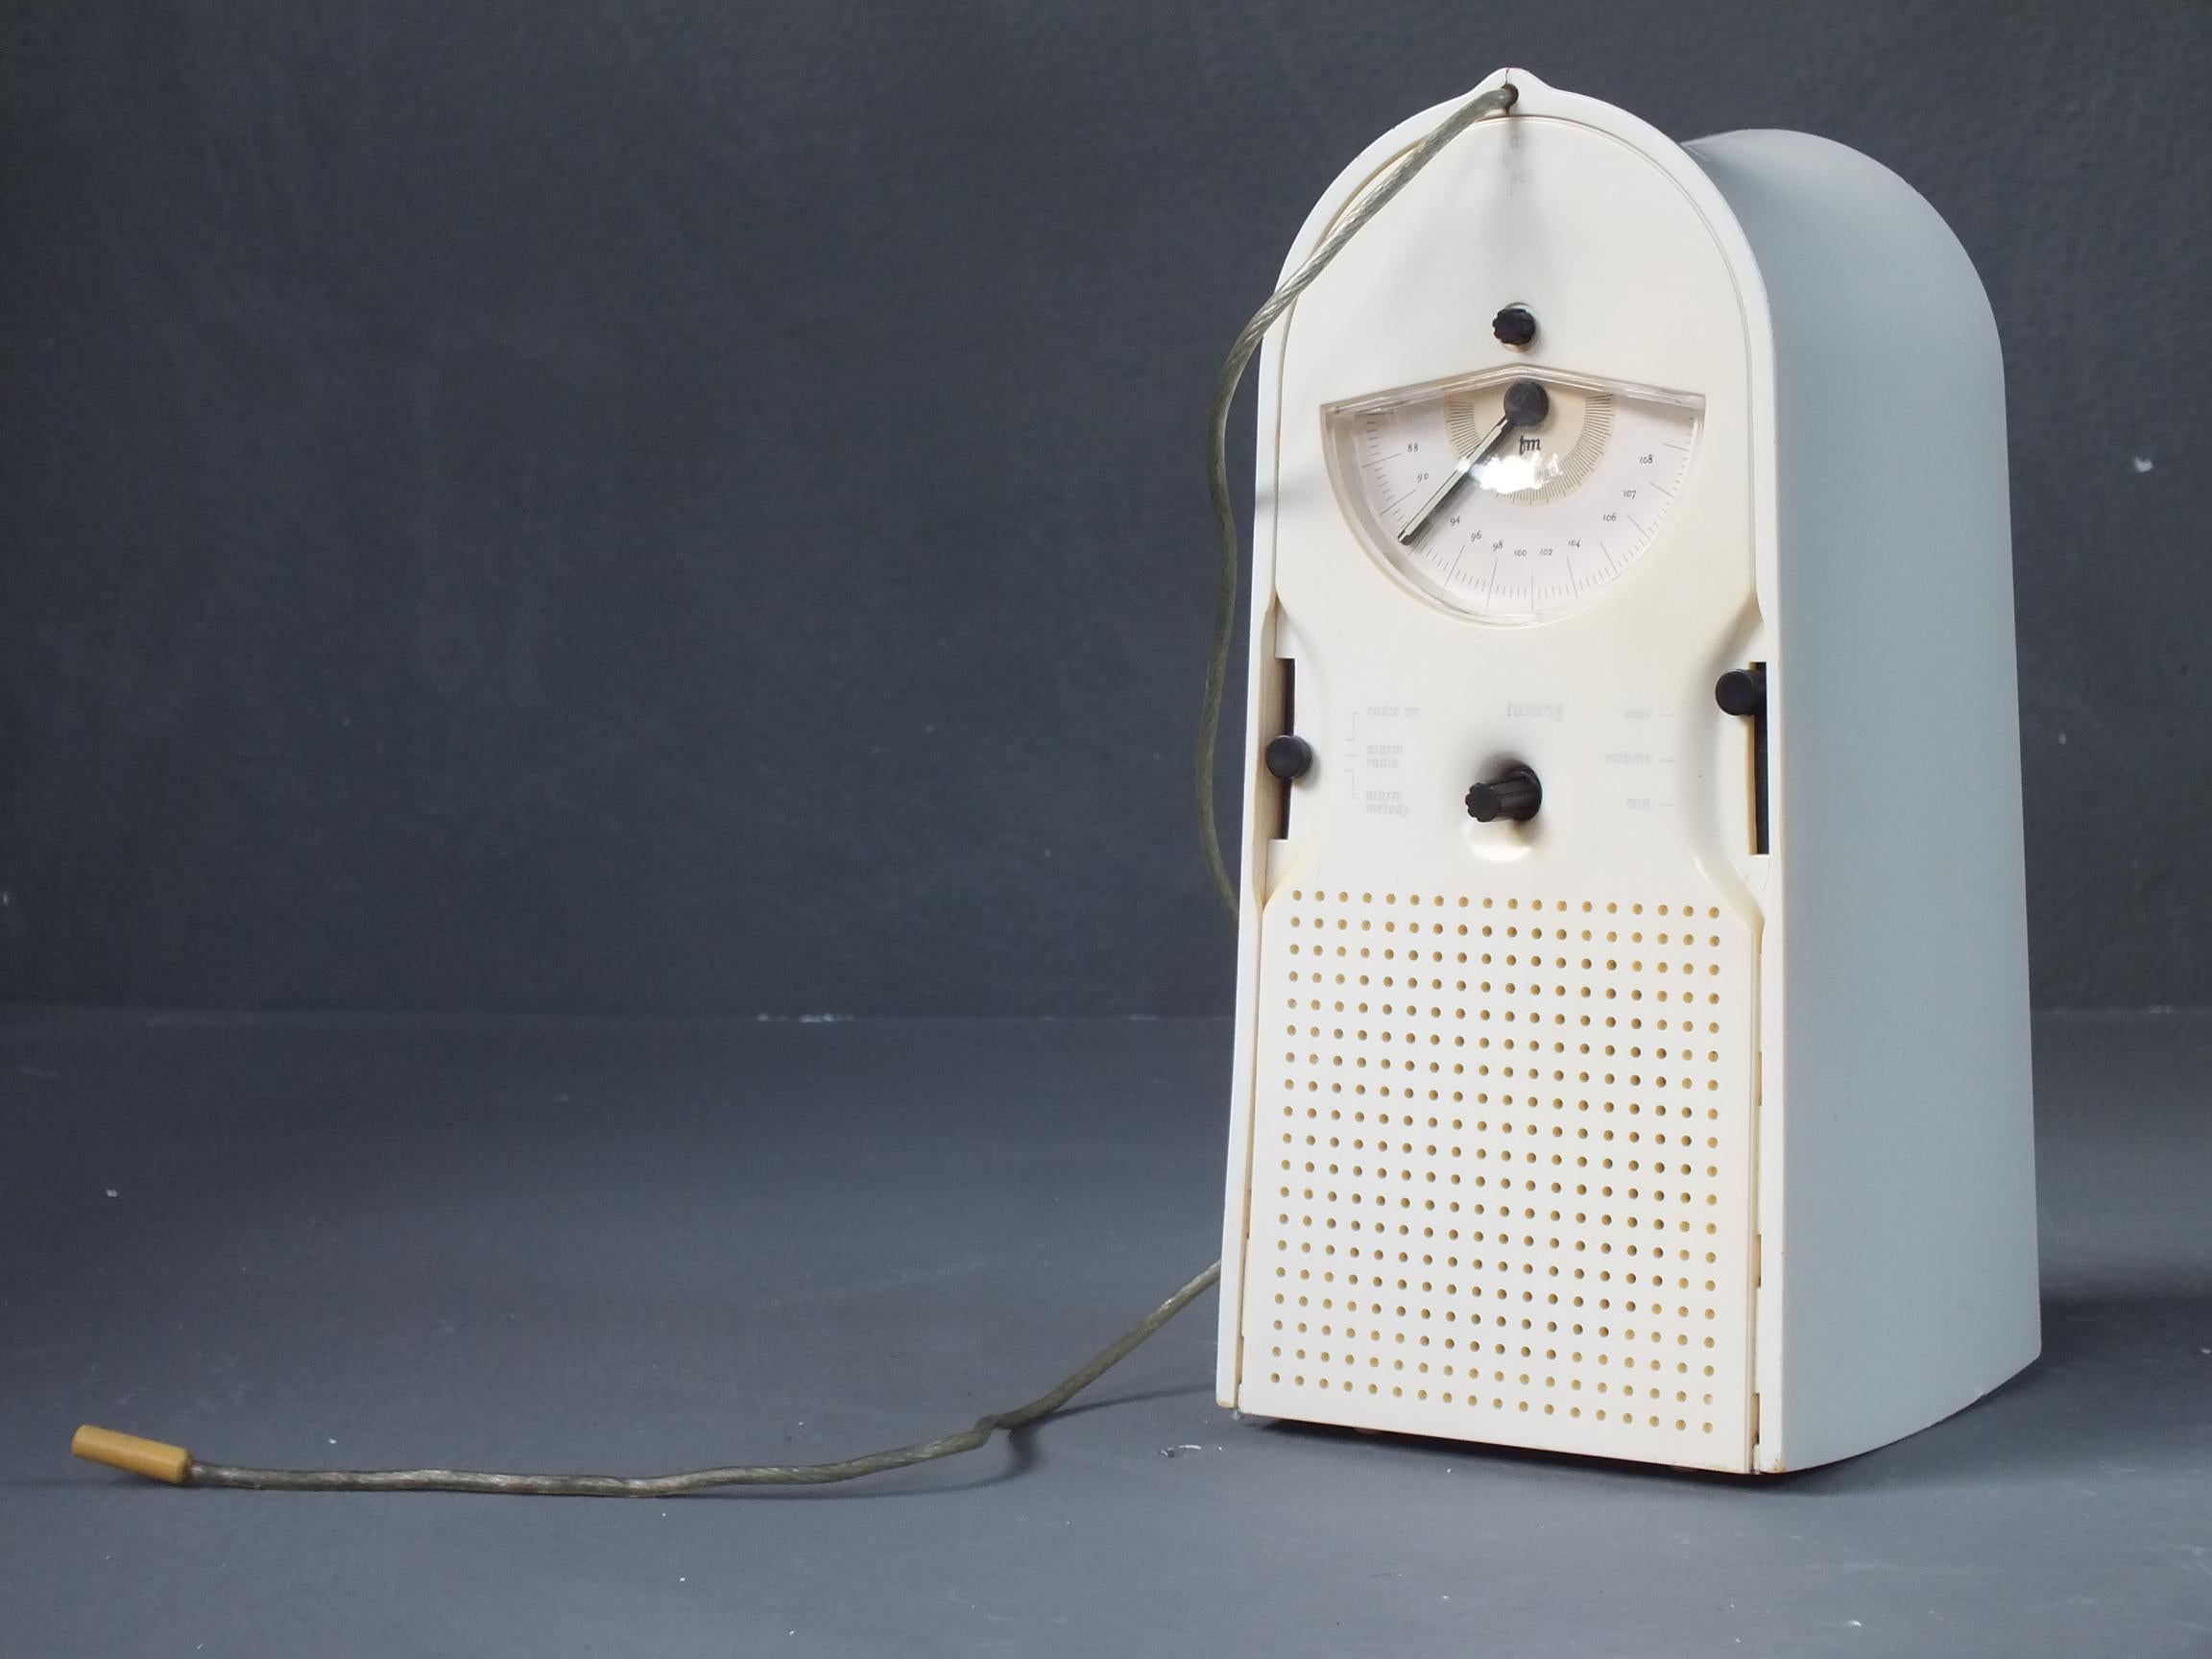 Plastique Thomson prod. L'horloge radio coo par Pilippe Starck design, année 1994 en vente